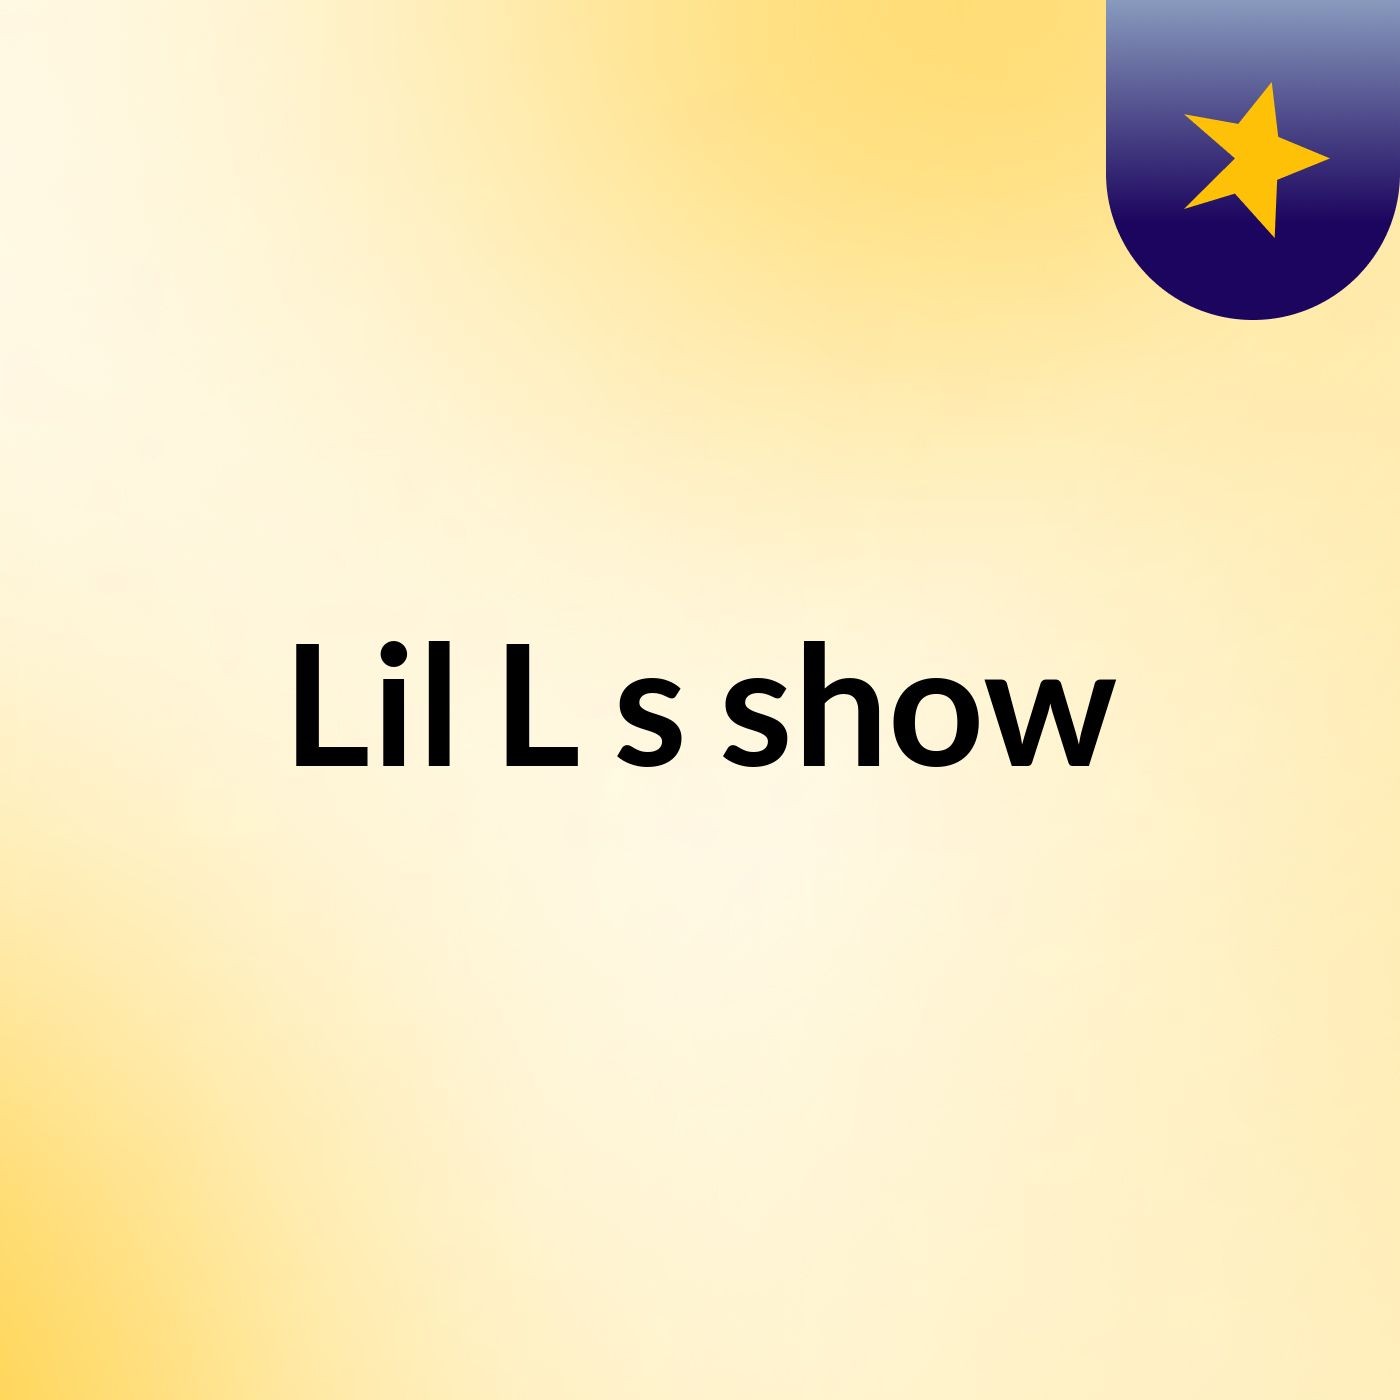 Episode 2 - Lil L's show